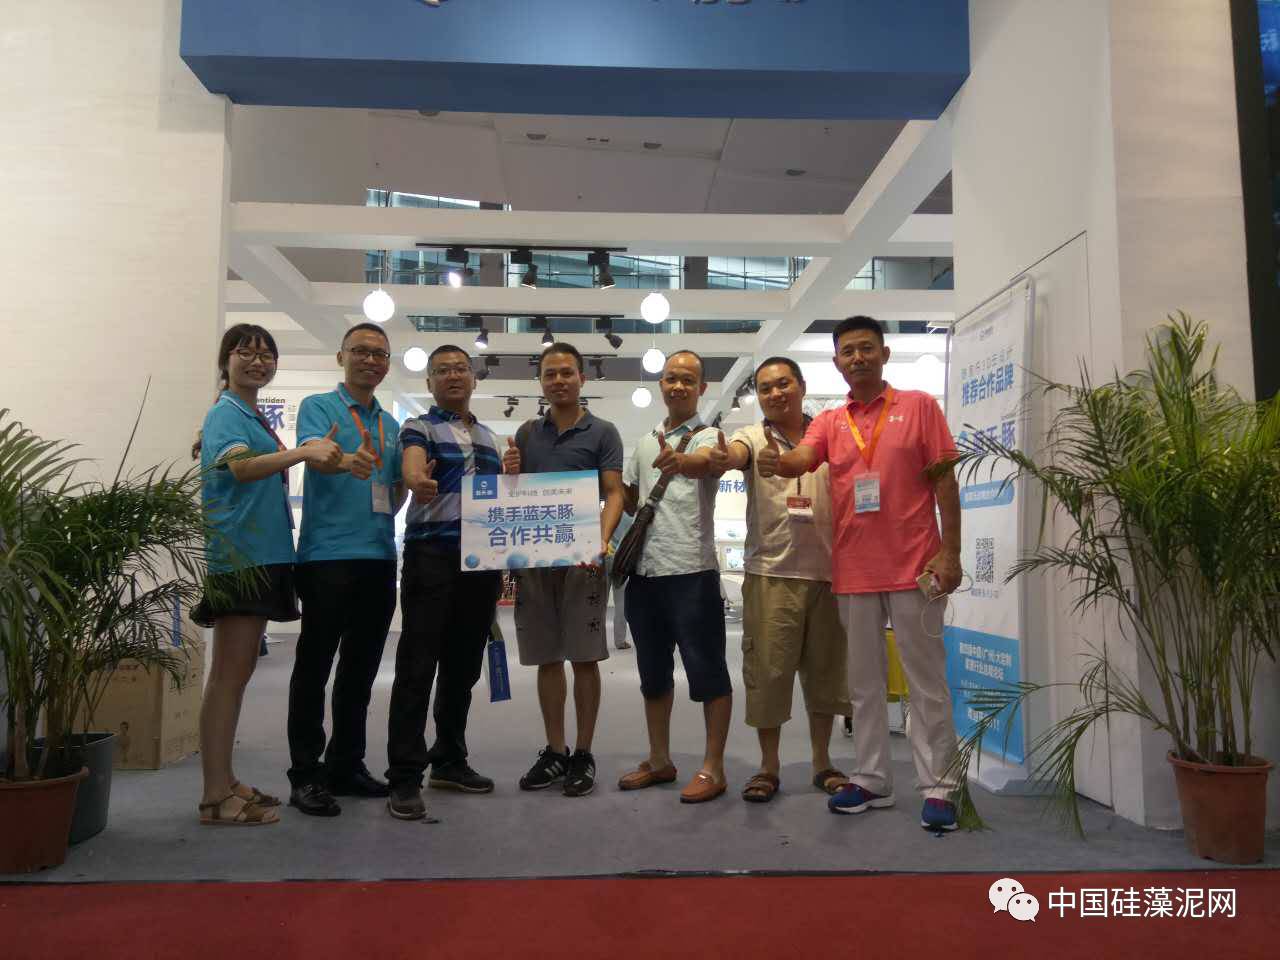 品牌 | 蓝天豚硅藻泥2017广州建博会签约经销商187家 创建博会硅藻泥展馆记(新加坡硅藻泥公司)